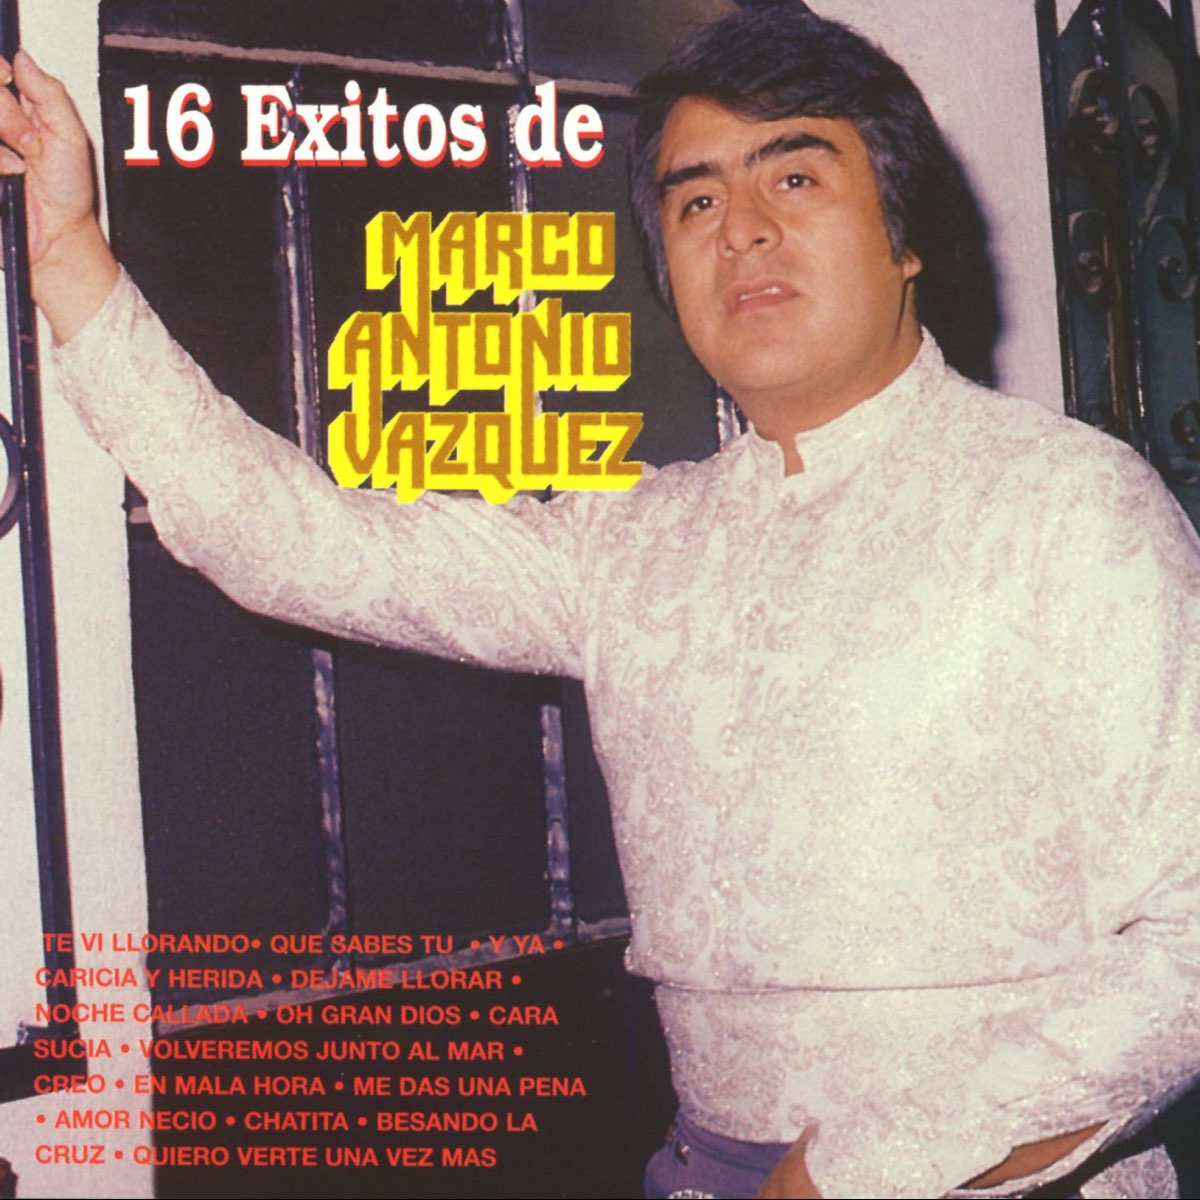 ‎16 Éxitos de Marco Antonio Vazquez - Album by Marco Antonio Vazquez ...